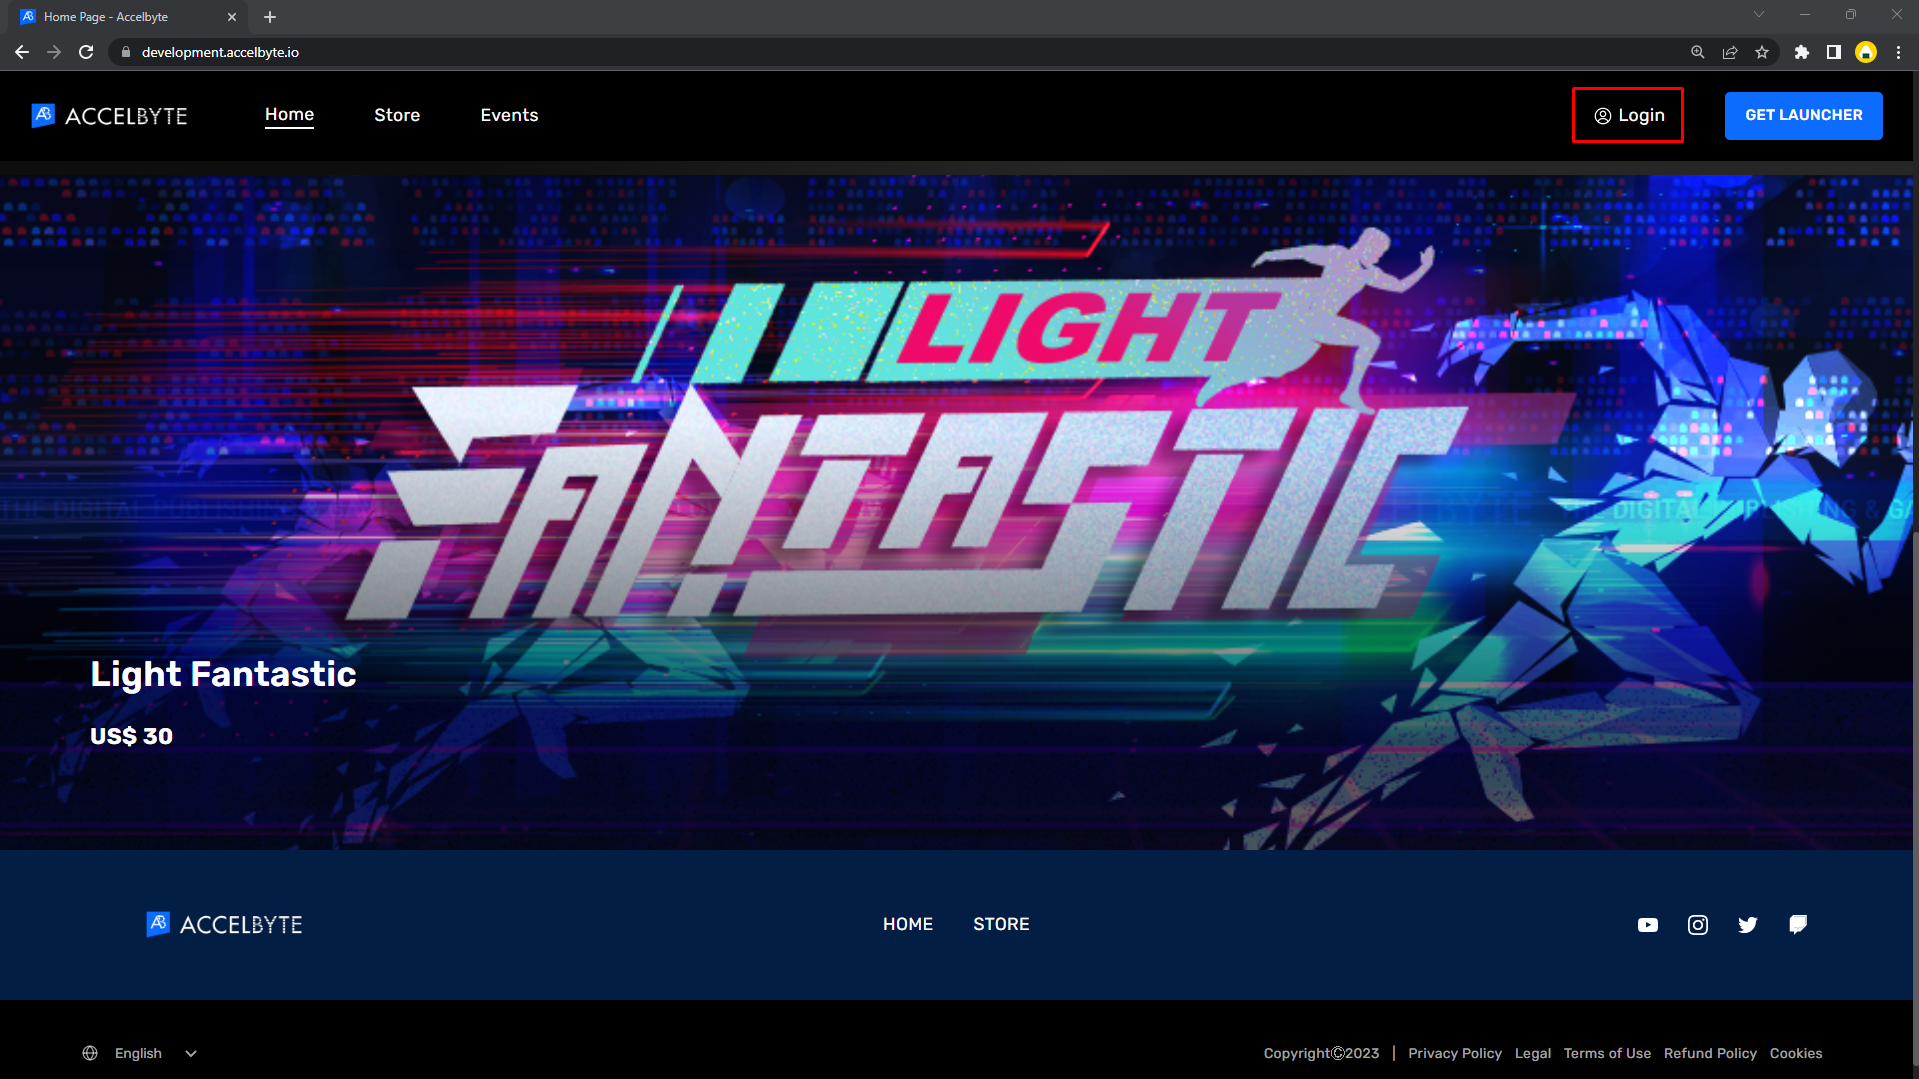 Player Portal